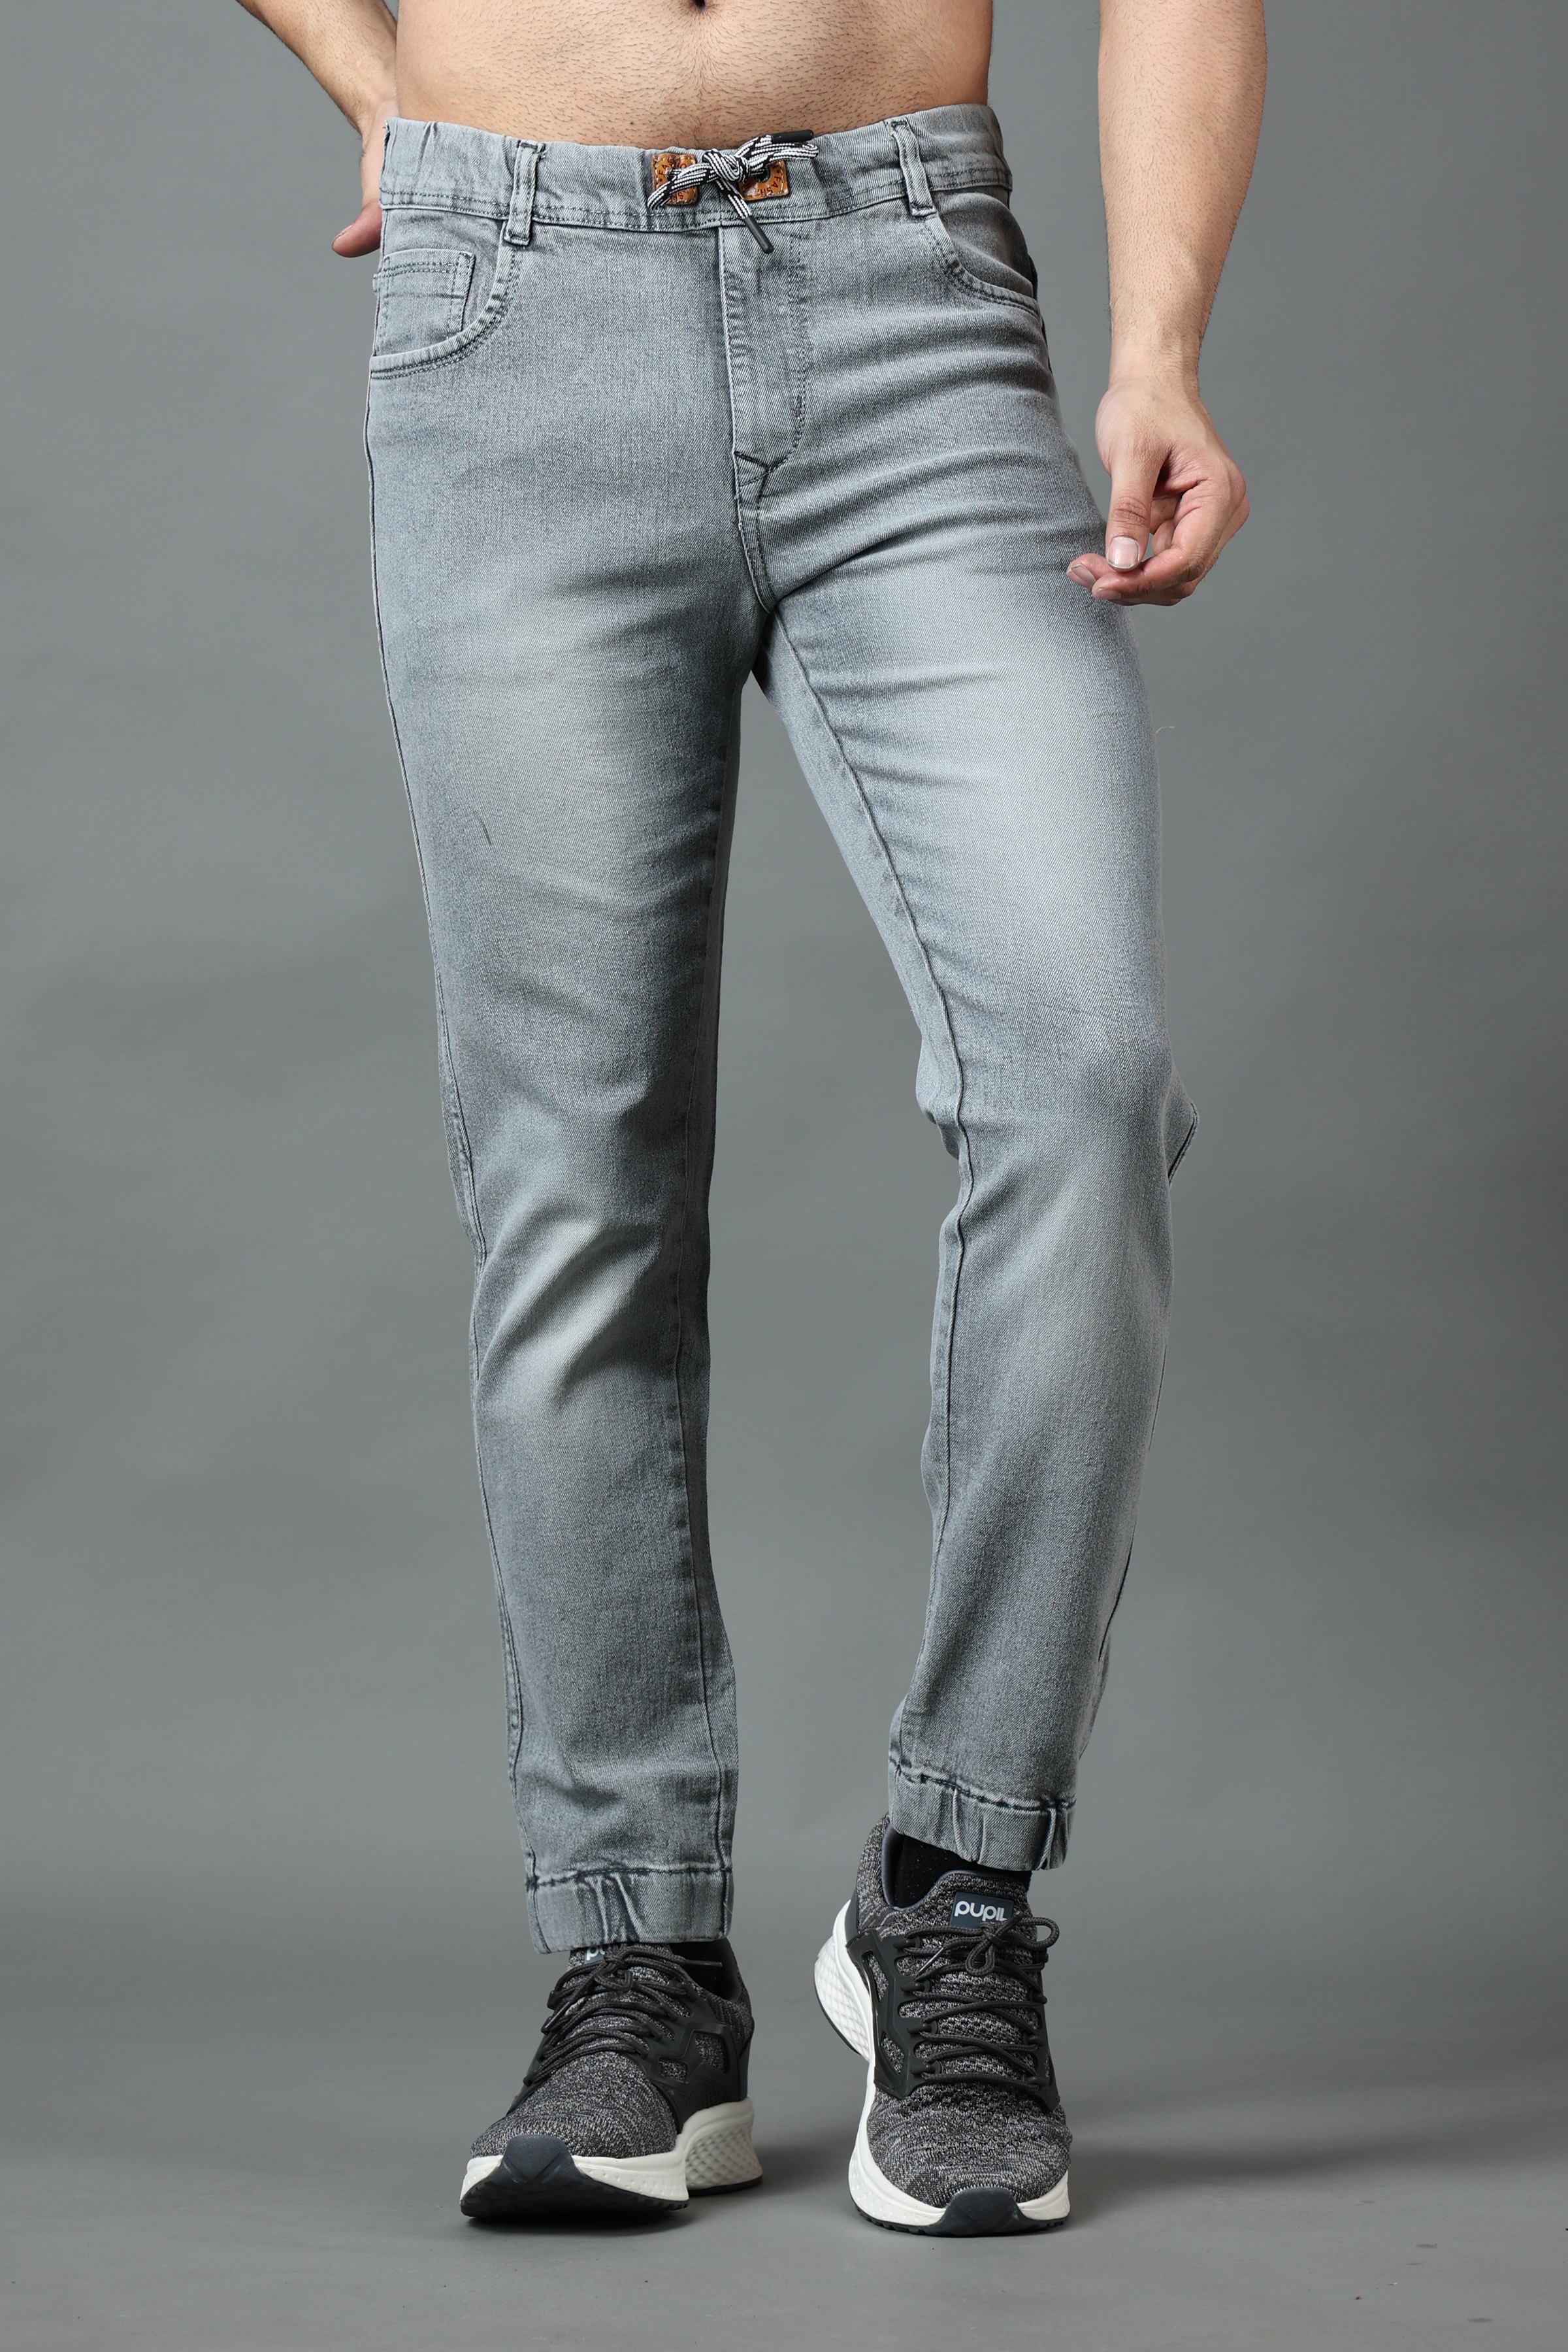 EditLook Men's Grey Blended Denim Slim Fit Jogger